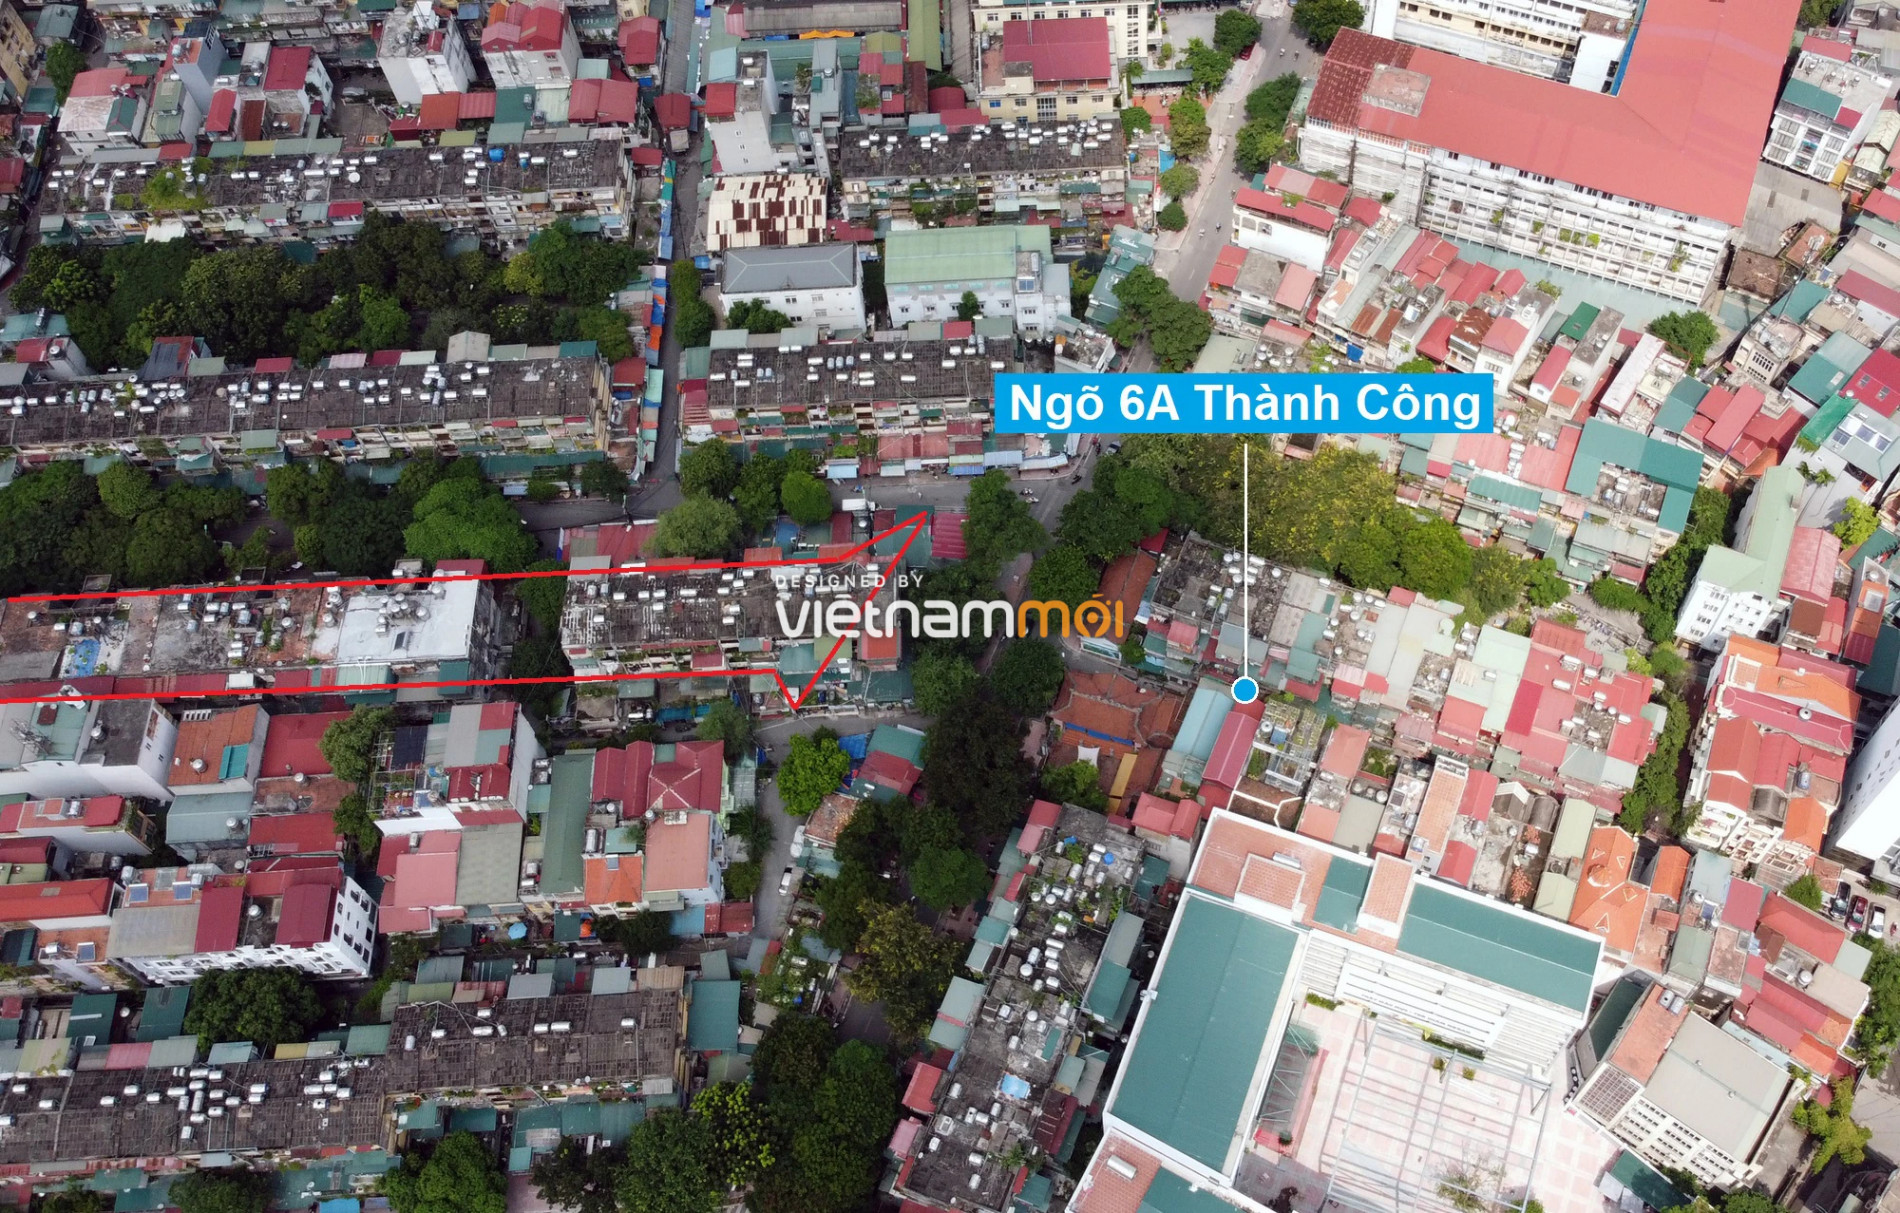 Những khu đất sắp thu hồi để mở đường ở phường Thành Công, Ba Đình, Hà Nội (phần 2) - Ảnh 11.